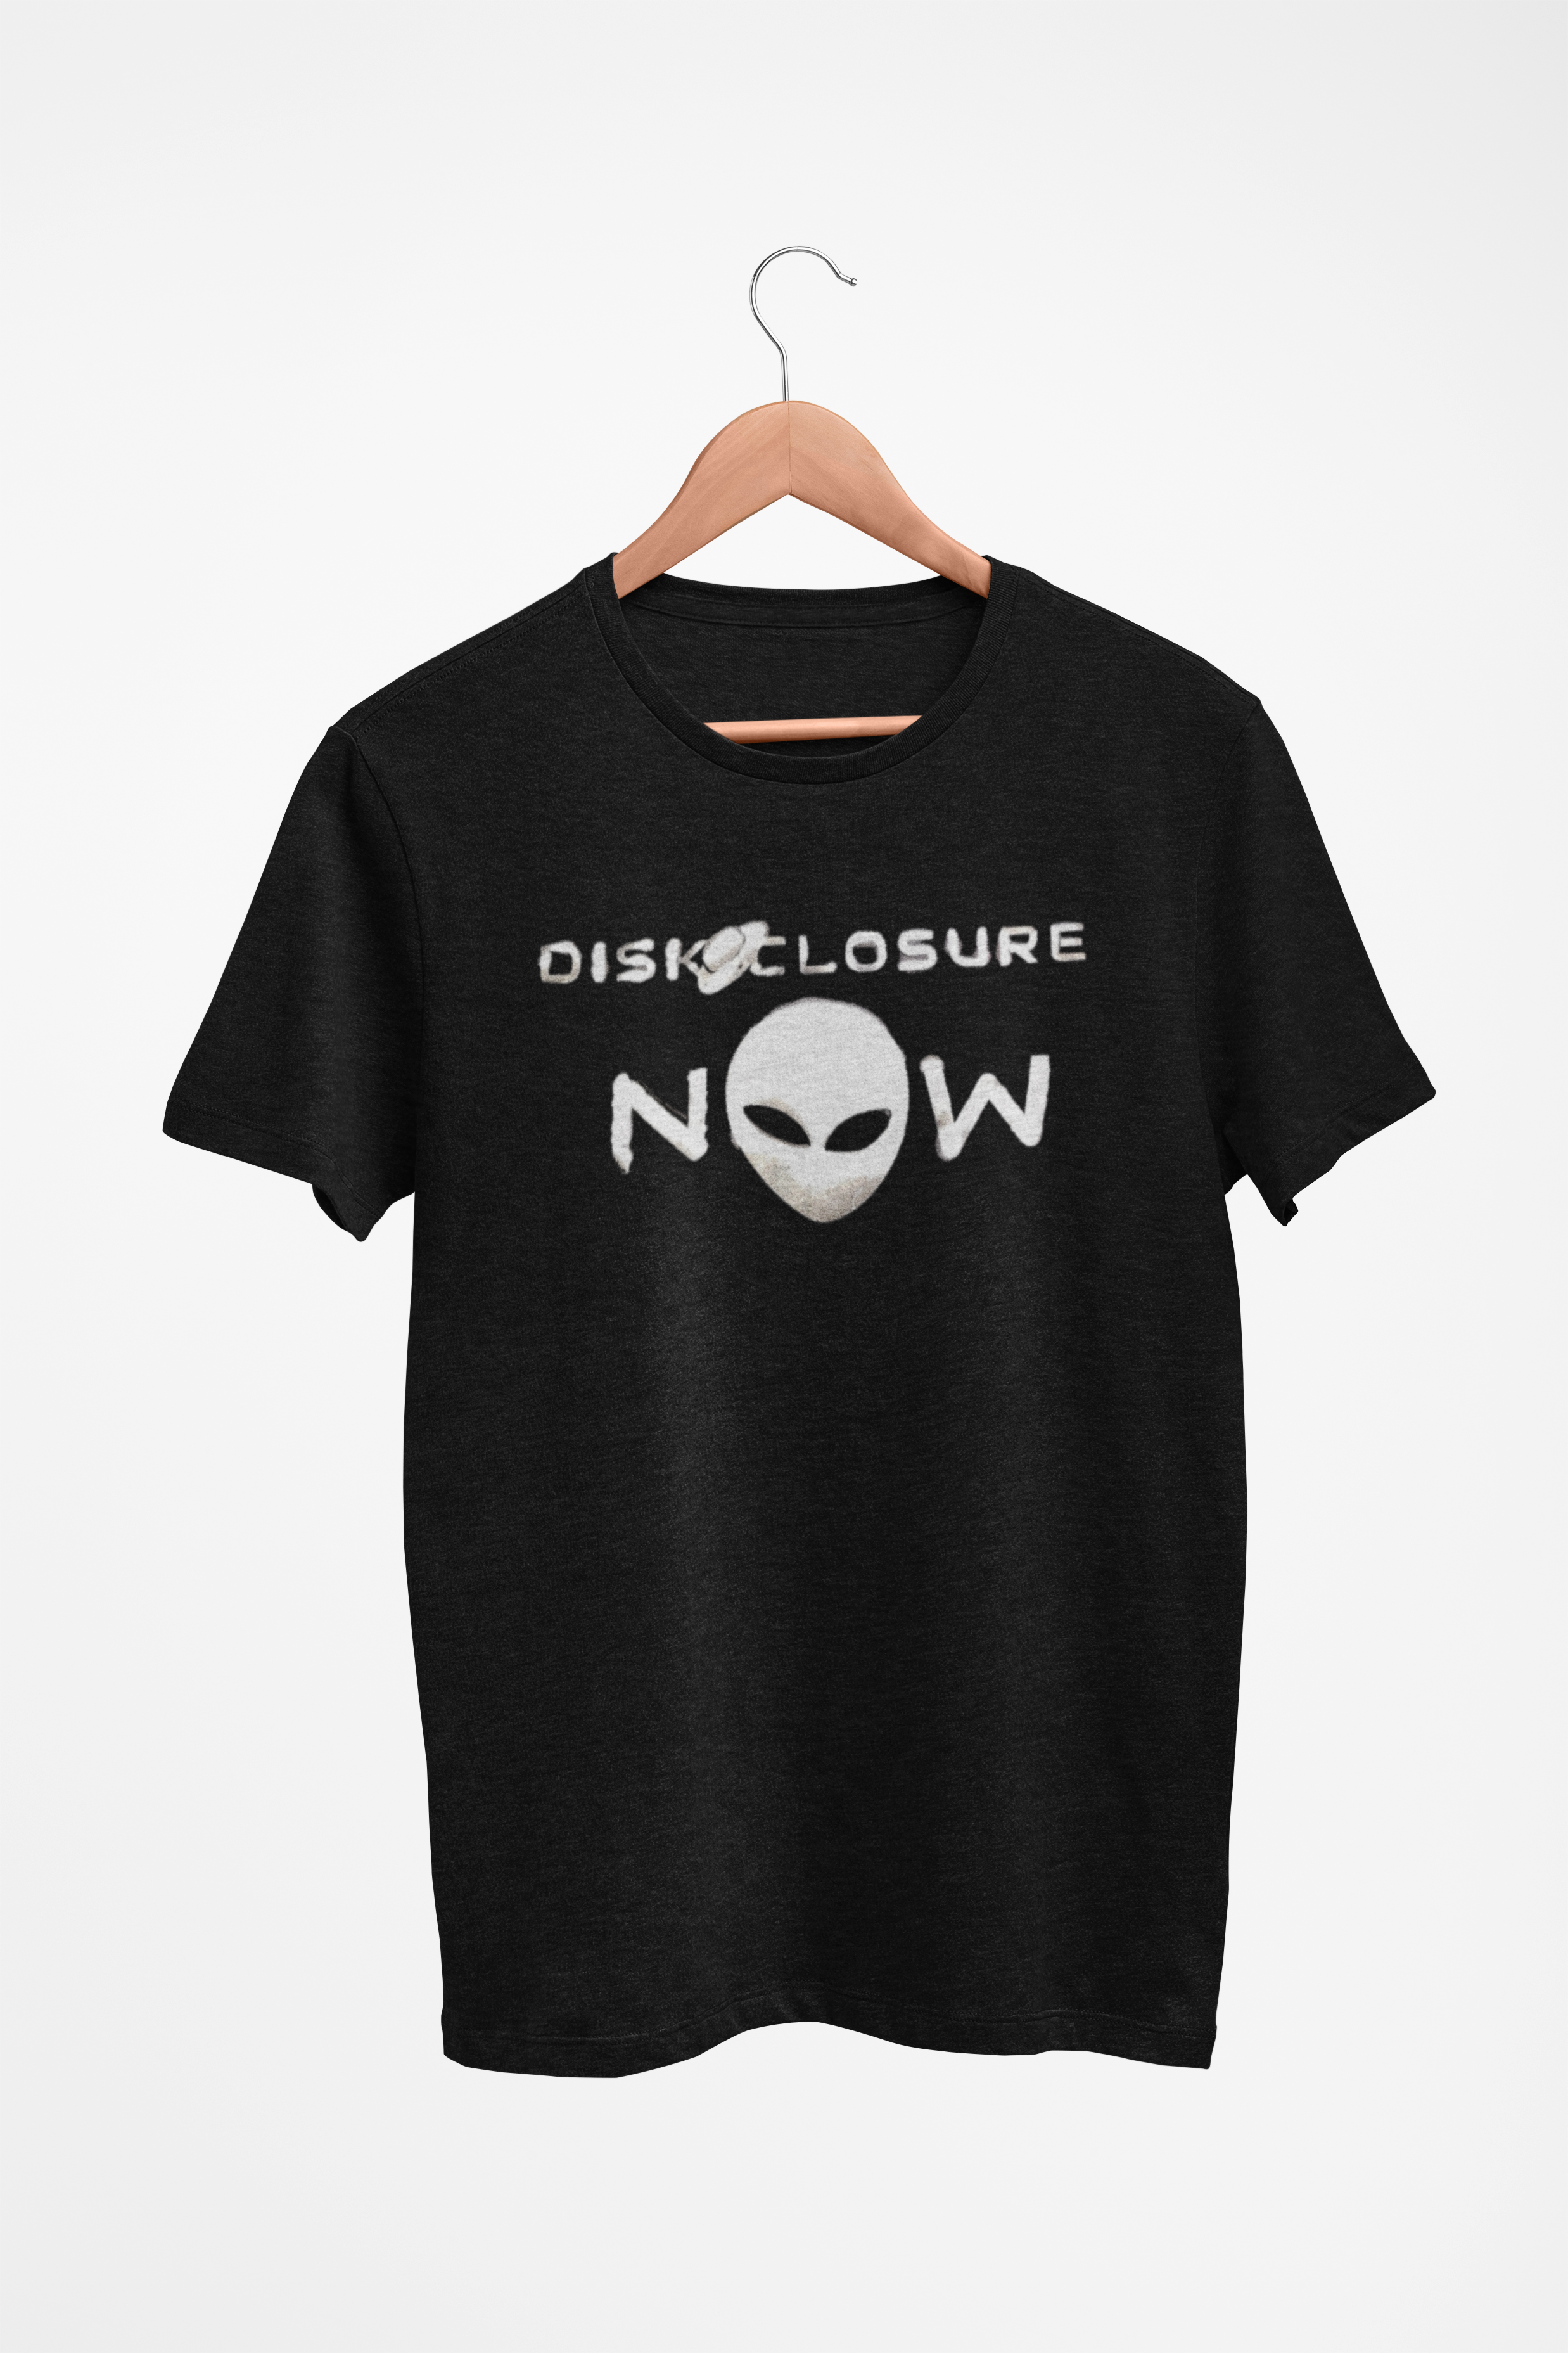 Disclosure  Shirt. - Drop Top Teez